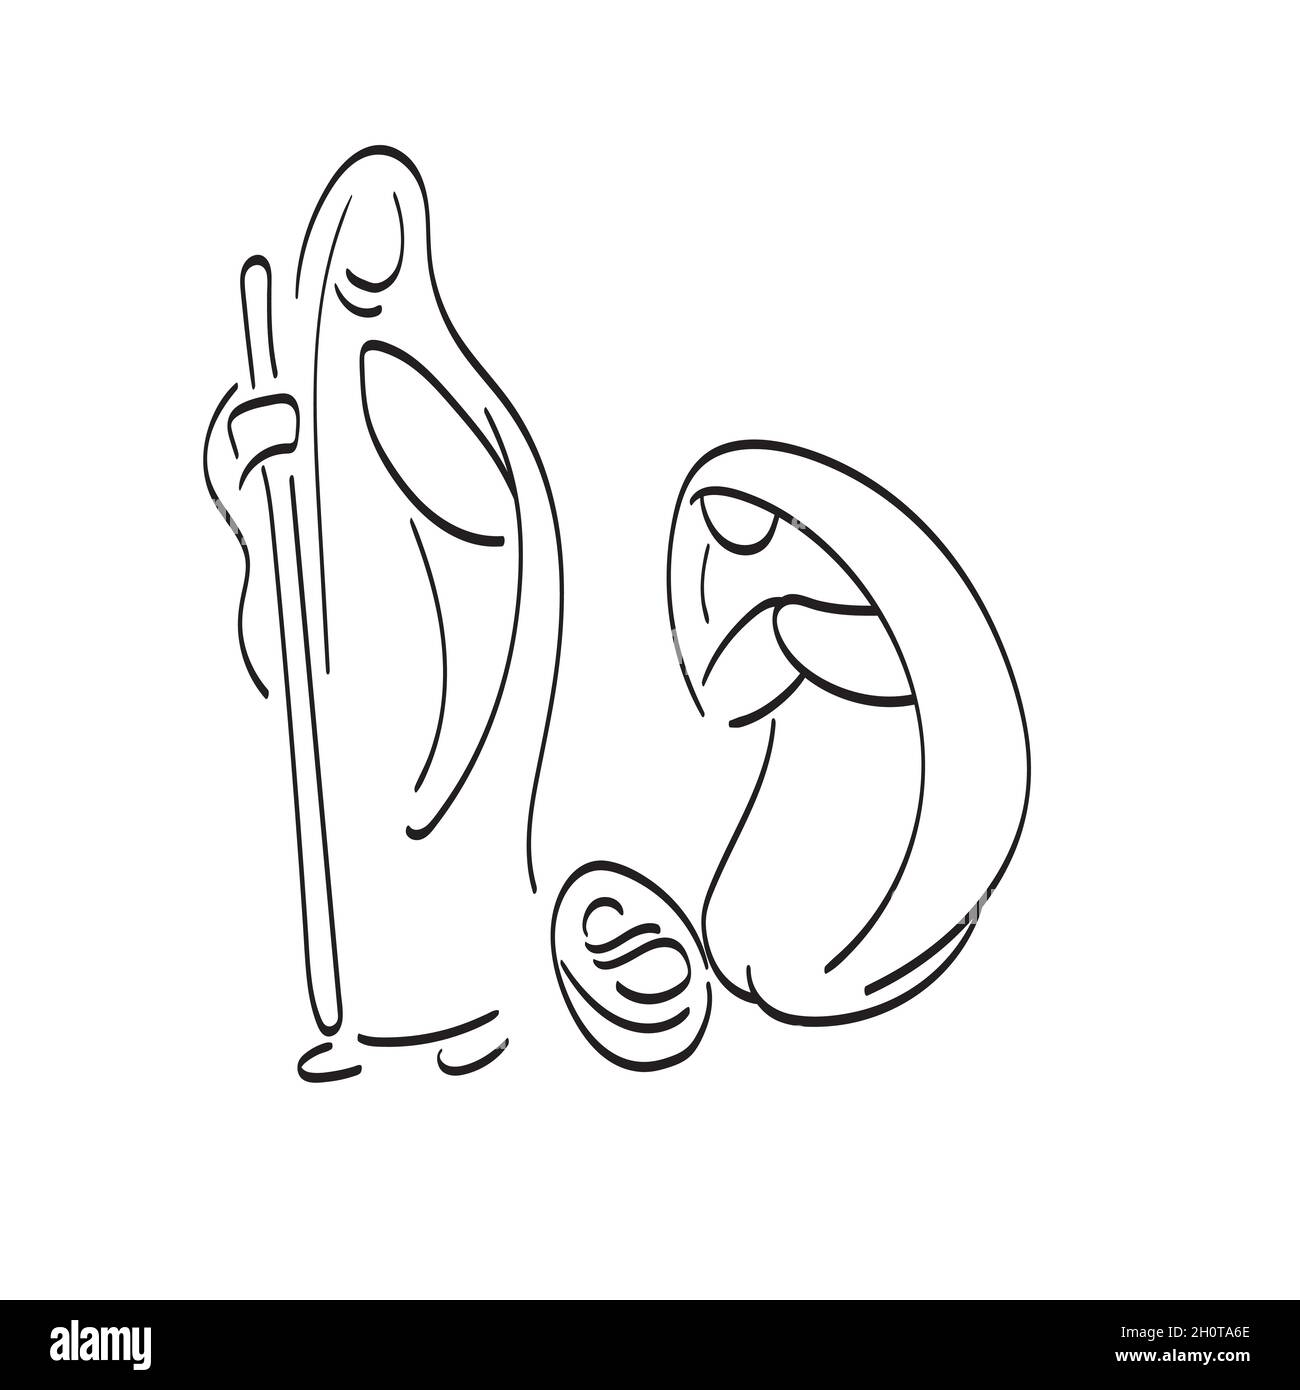 Weihnachtskrippe mit Maria, Joseph und Baby Jesus Hand gezeichnet mit schwarzen Linien Illustration Vektor Stock Vektor